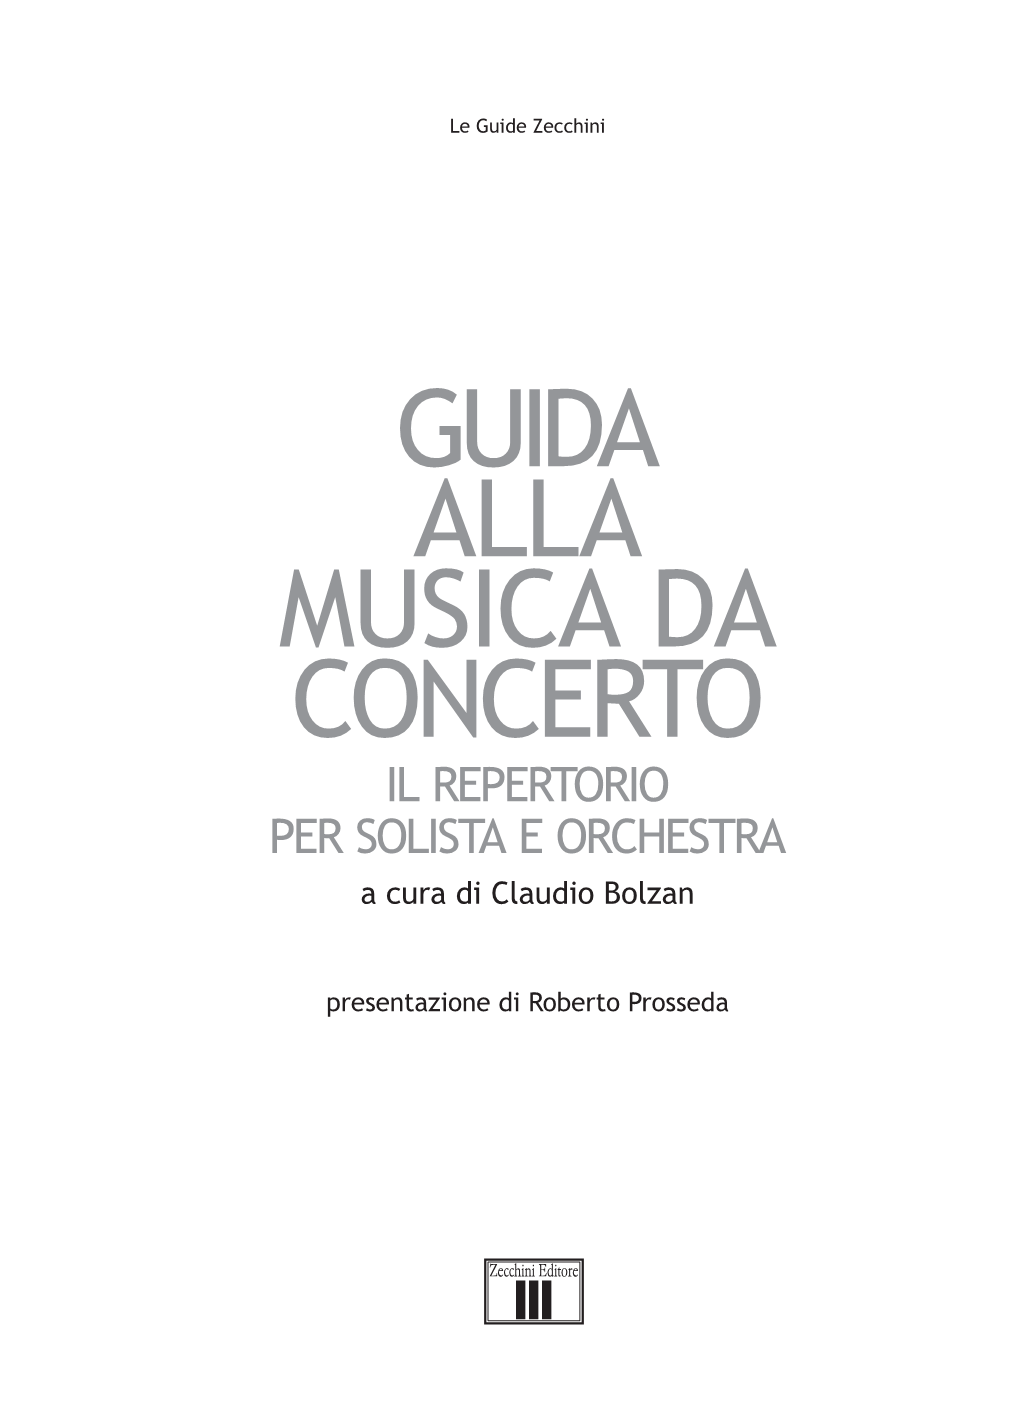 GUIDA ALLA MUSICA DA CONCERTO IL REPERTORIO PER SOLISTA E ORCHESTRA a Cura Di Claudio Bolzan